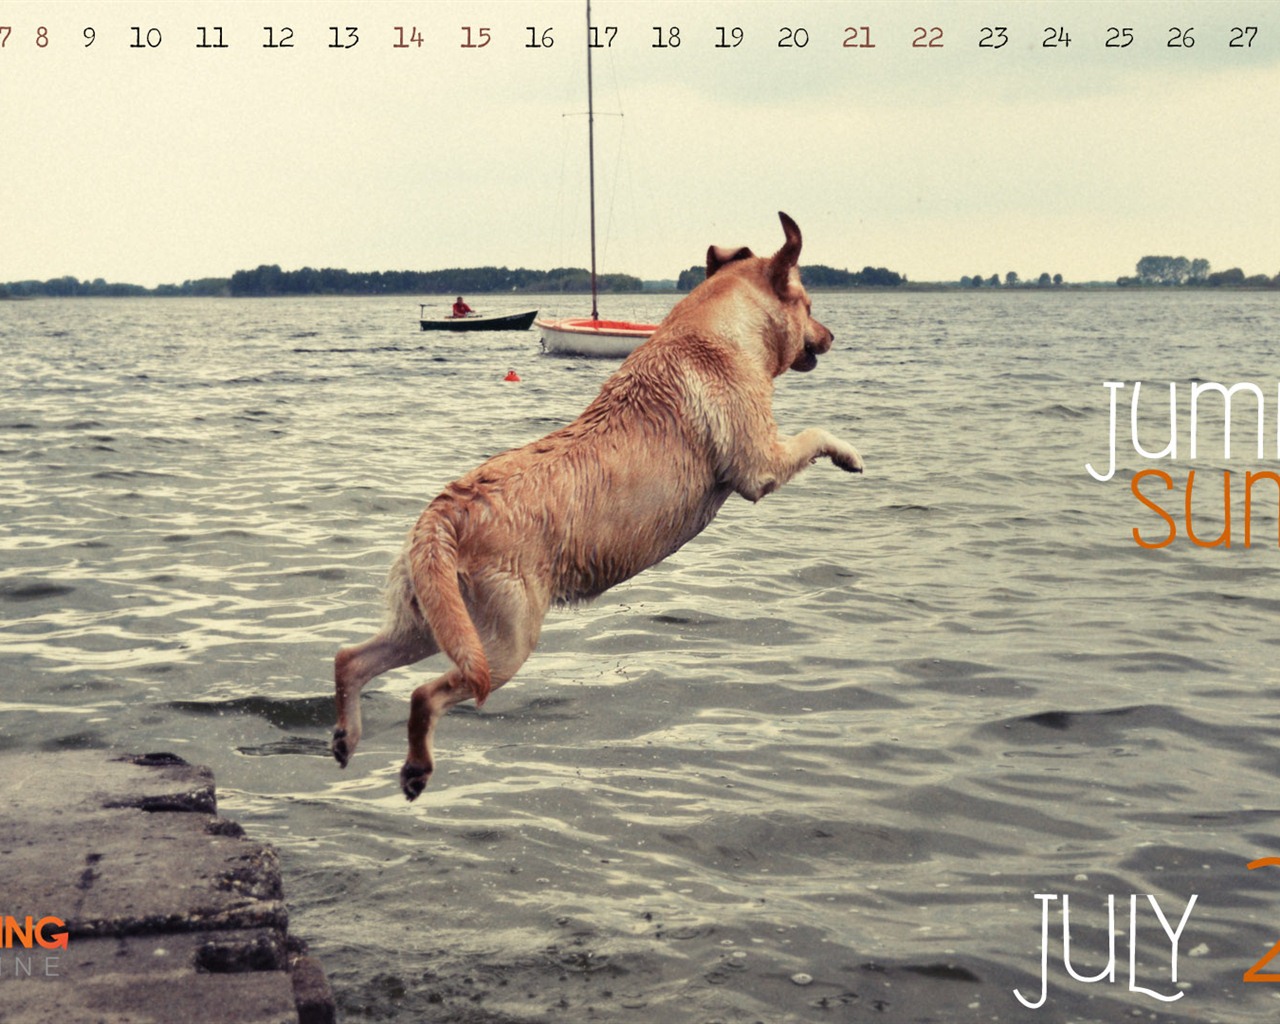 July 2012 Calendar wallpapers (1) #20 - 1280x1024